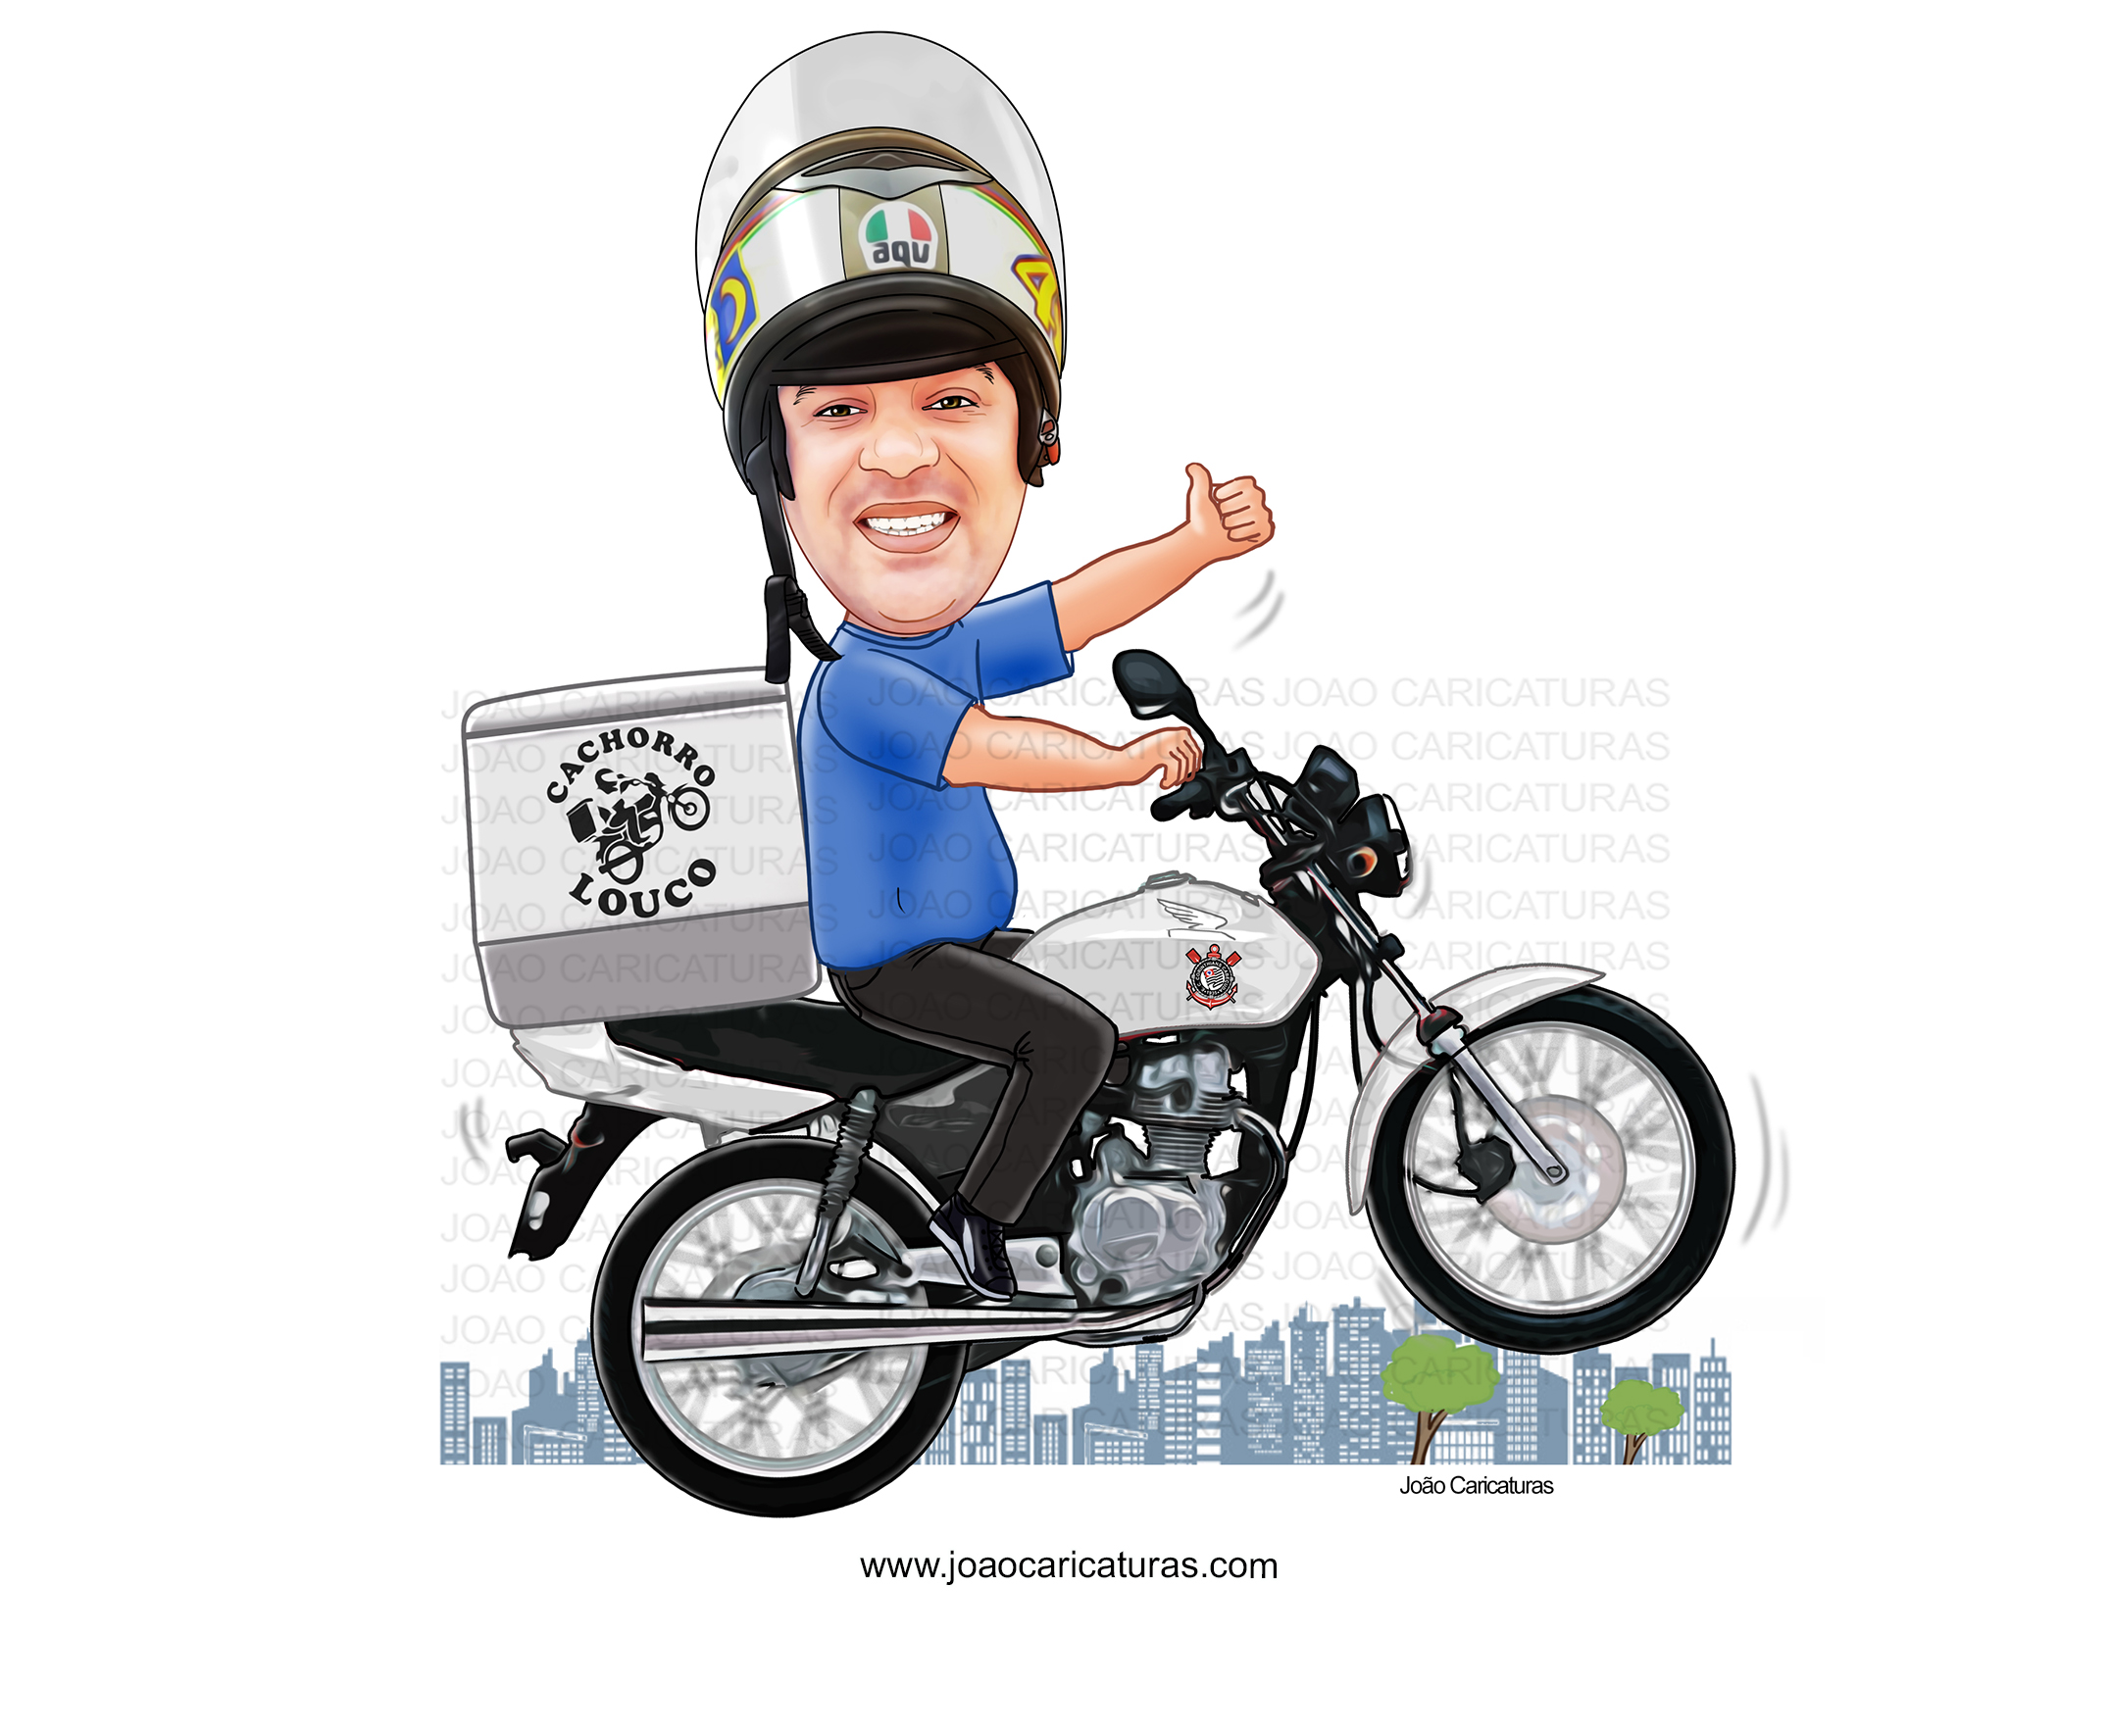 Caricatura aniversário homem motoqueiro motoboy, cachorro louco, entregas,  rápidas,cidade,profissão, duas rodas,pai, marido,moto, motocicleta